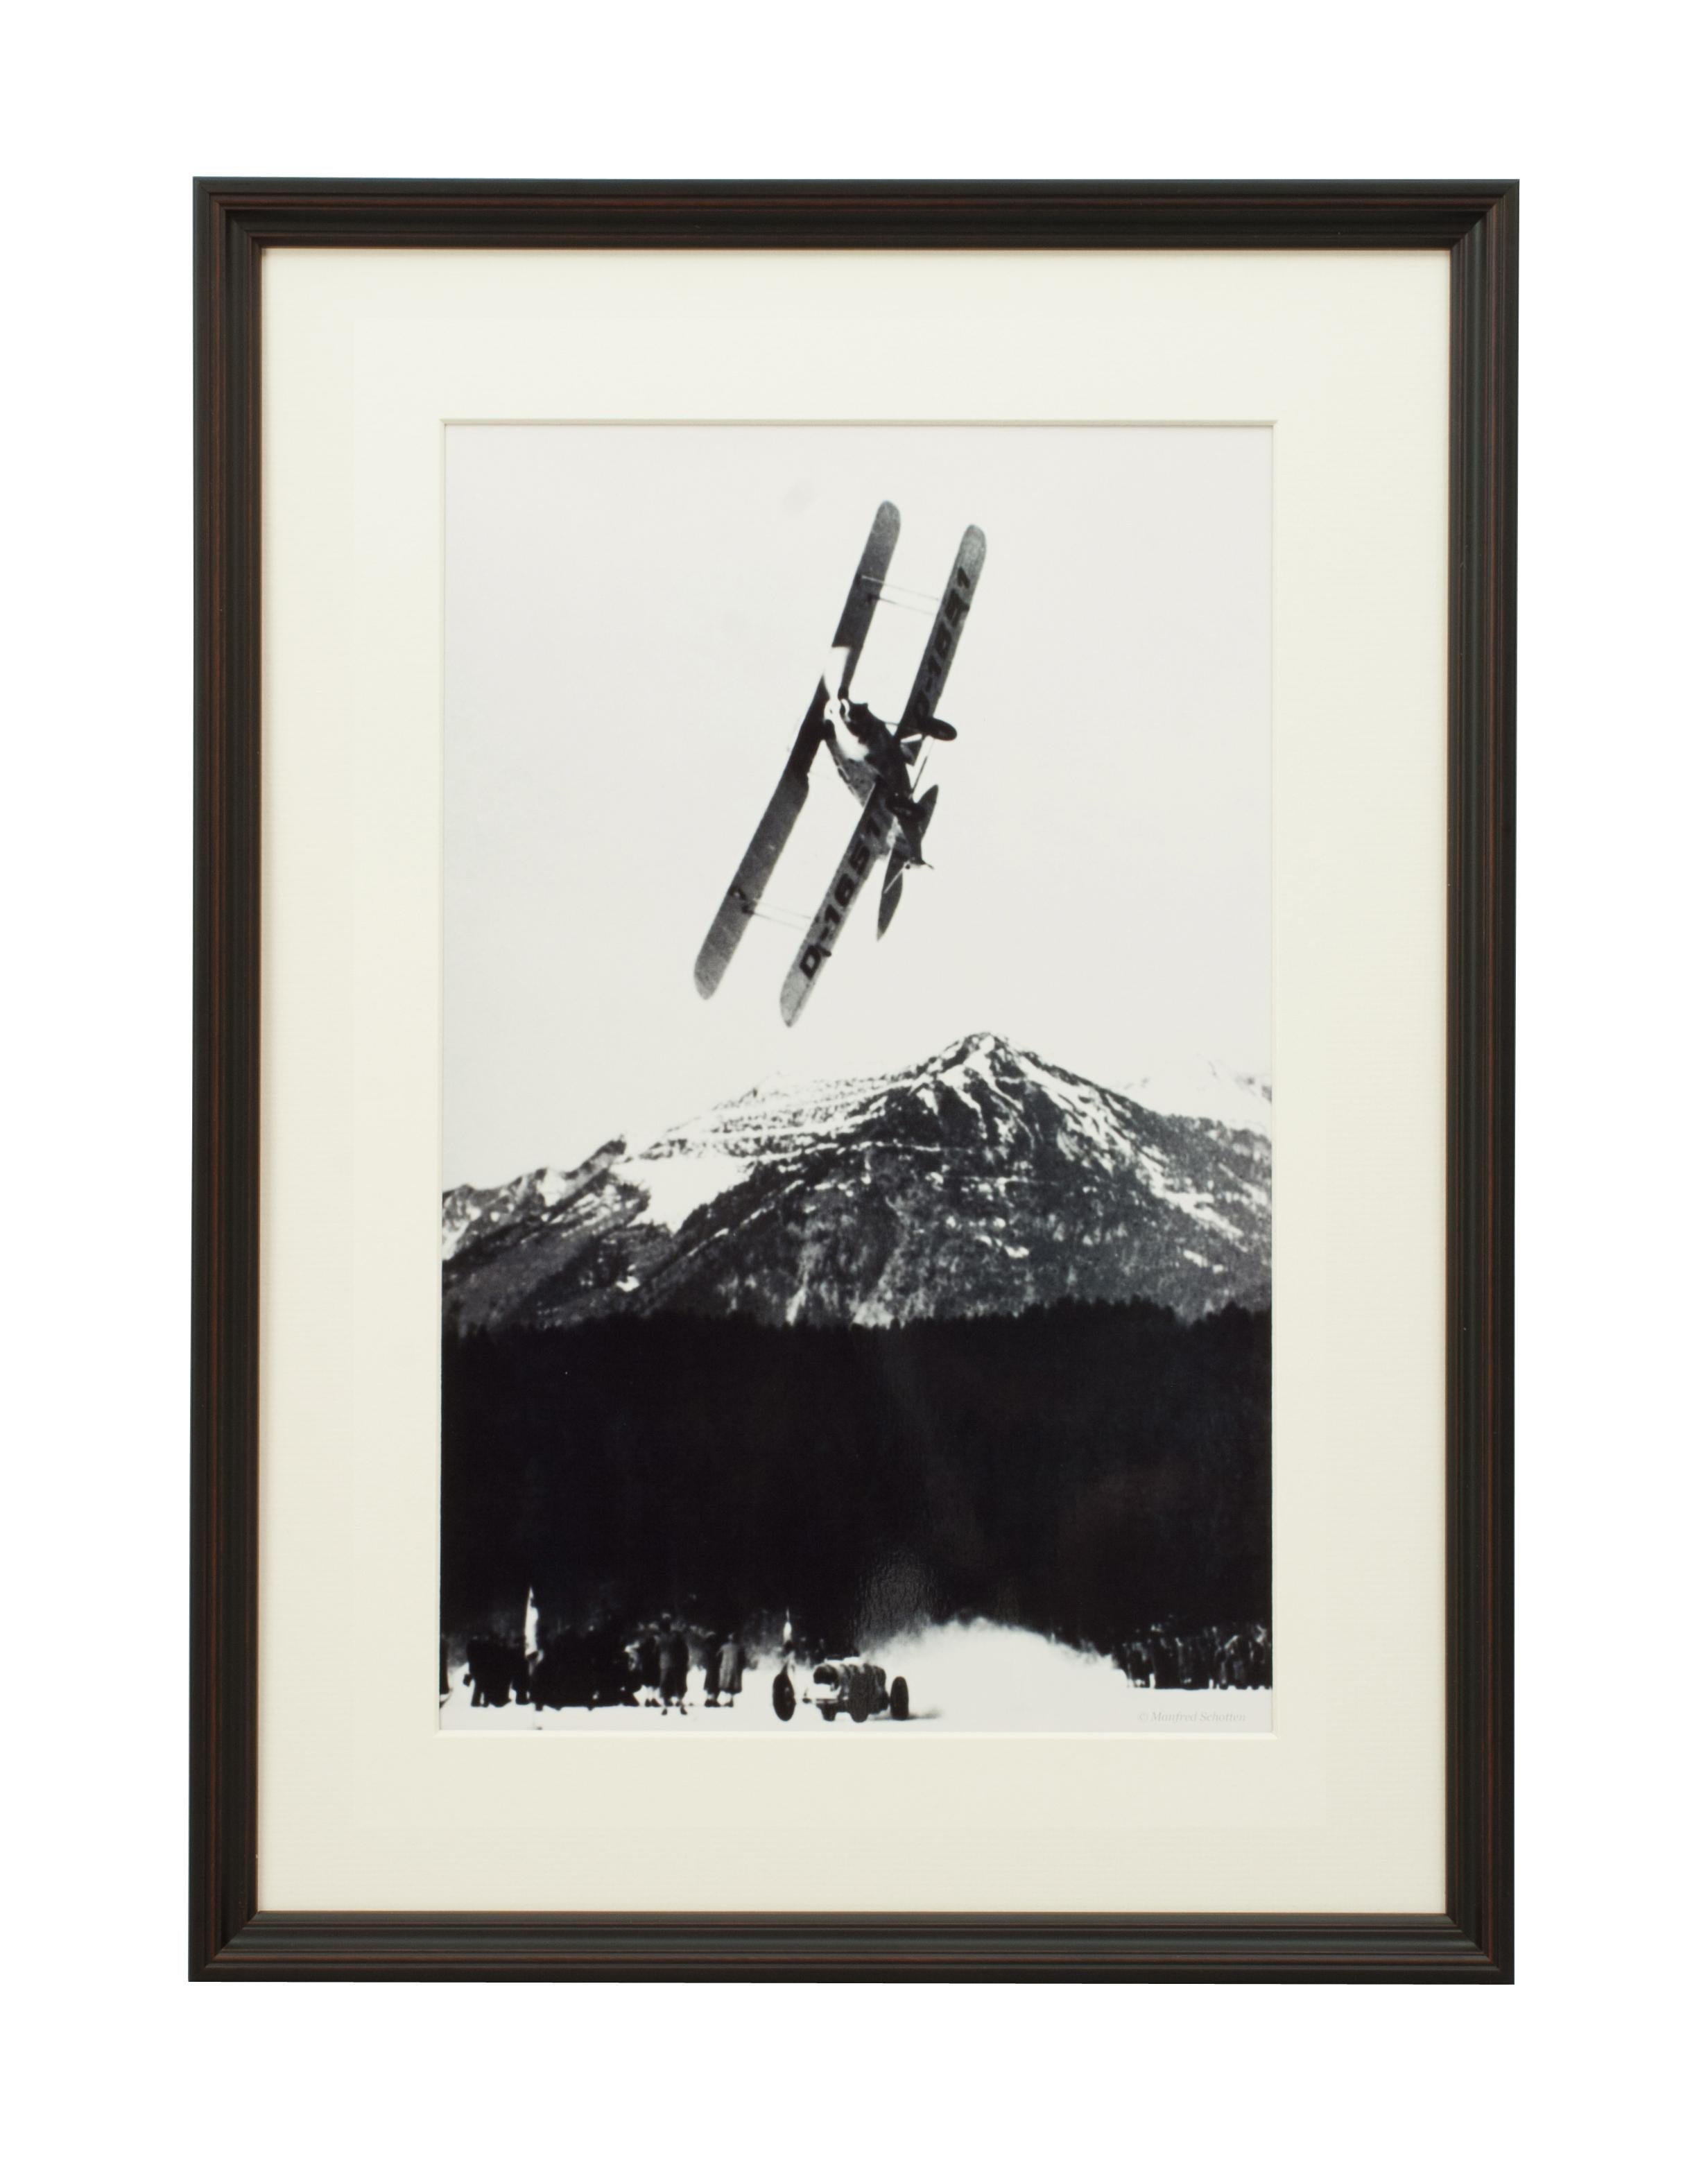 Photographie de style vintage, photographie de ski alpin encadrée, The Race.
tHE RACE 